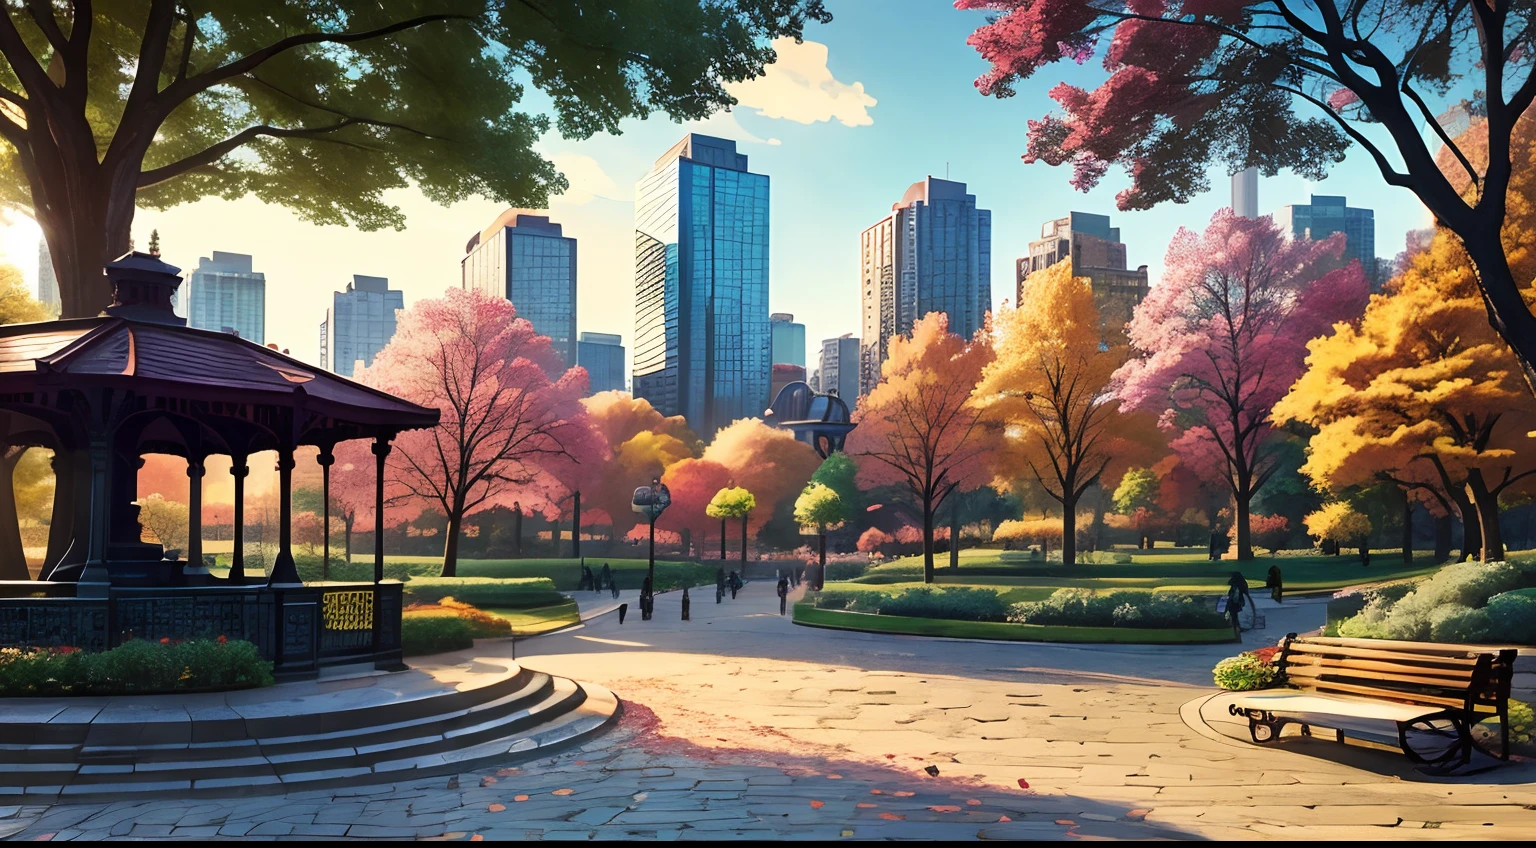 (最好的品質:1.0), a vibrant park in the middle of a 明亮的 cityscape, 树木, 長椅, 1 尊雕像, 1 個涼亭, 鵝卵石小路, 漫畫風格, 明亮的